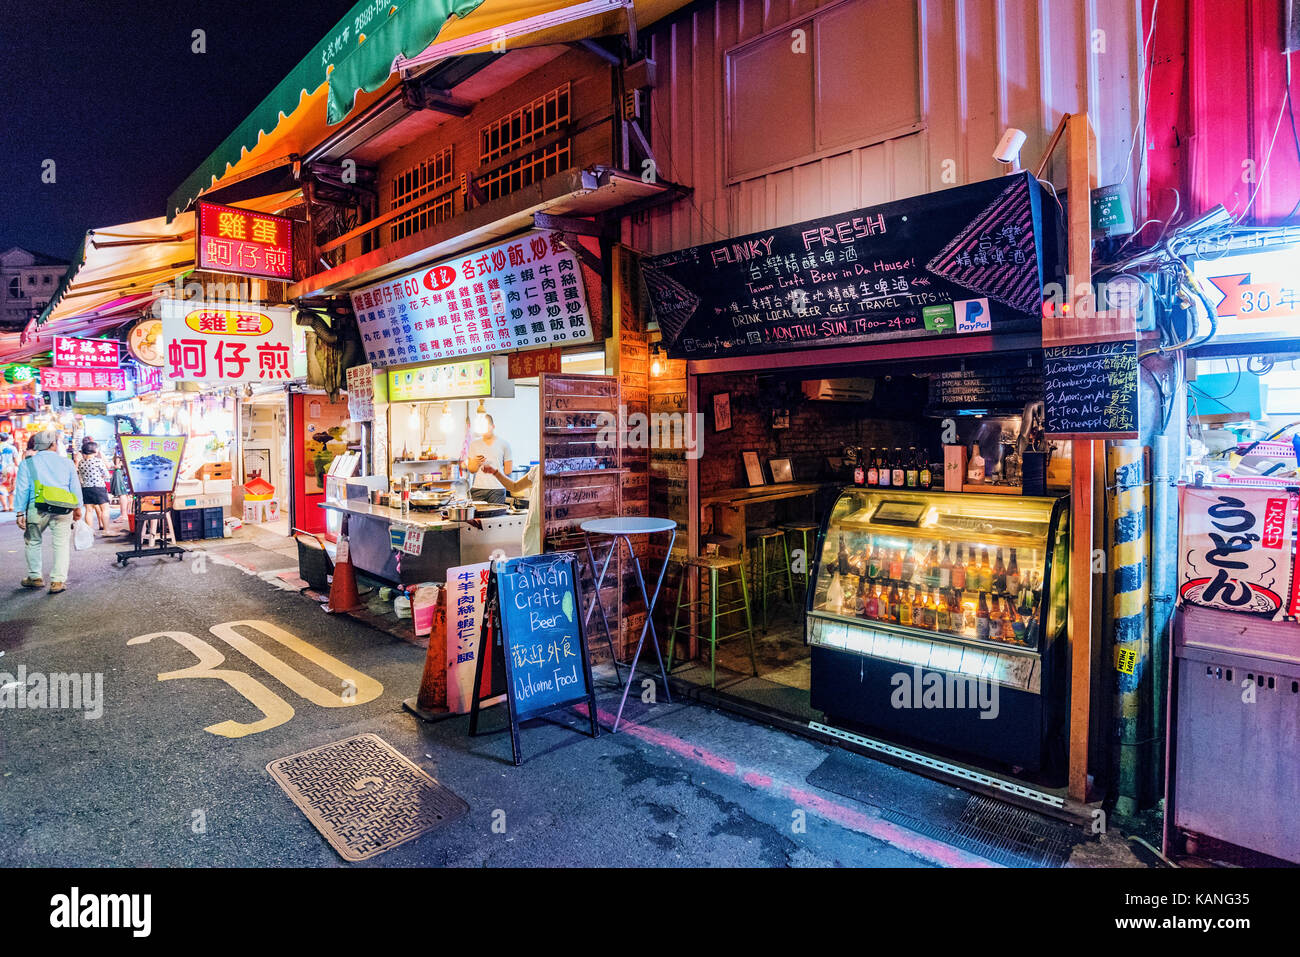 TAIPEI, Taiwan - 11. Juli: Dies ist eine Straße in Shilin Night Market einen berühmten Nachtmarkt, wo viele Leute kommen taiwanische Essen zu probieren und Einkaufen o Stockfoto